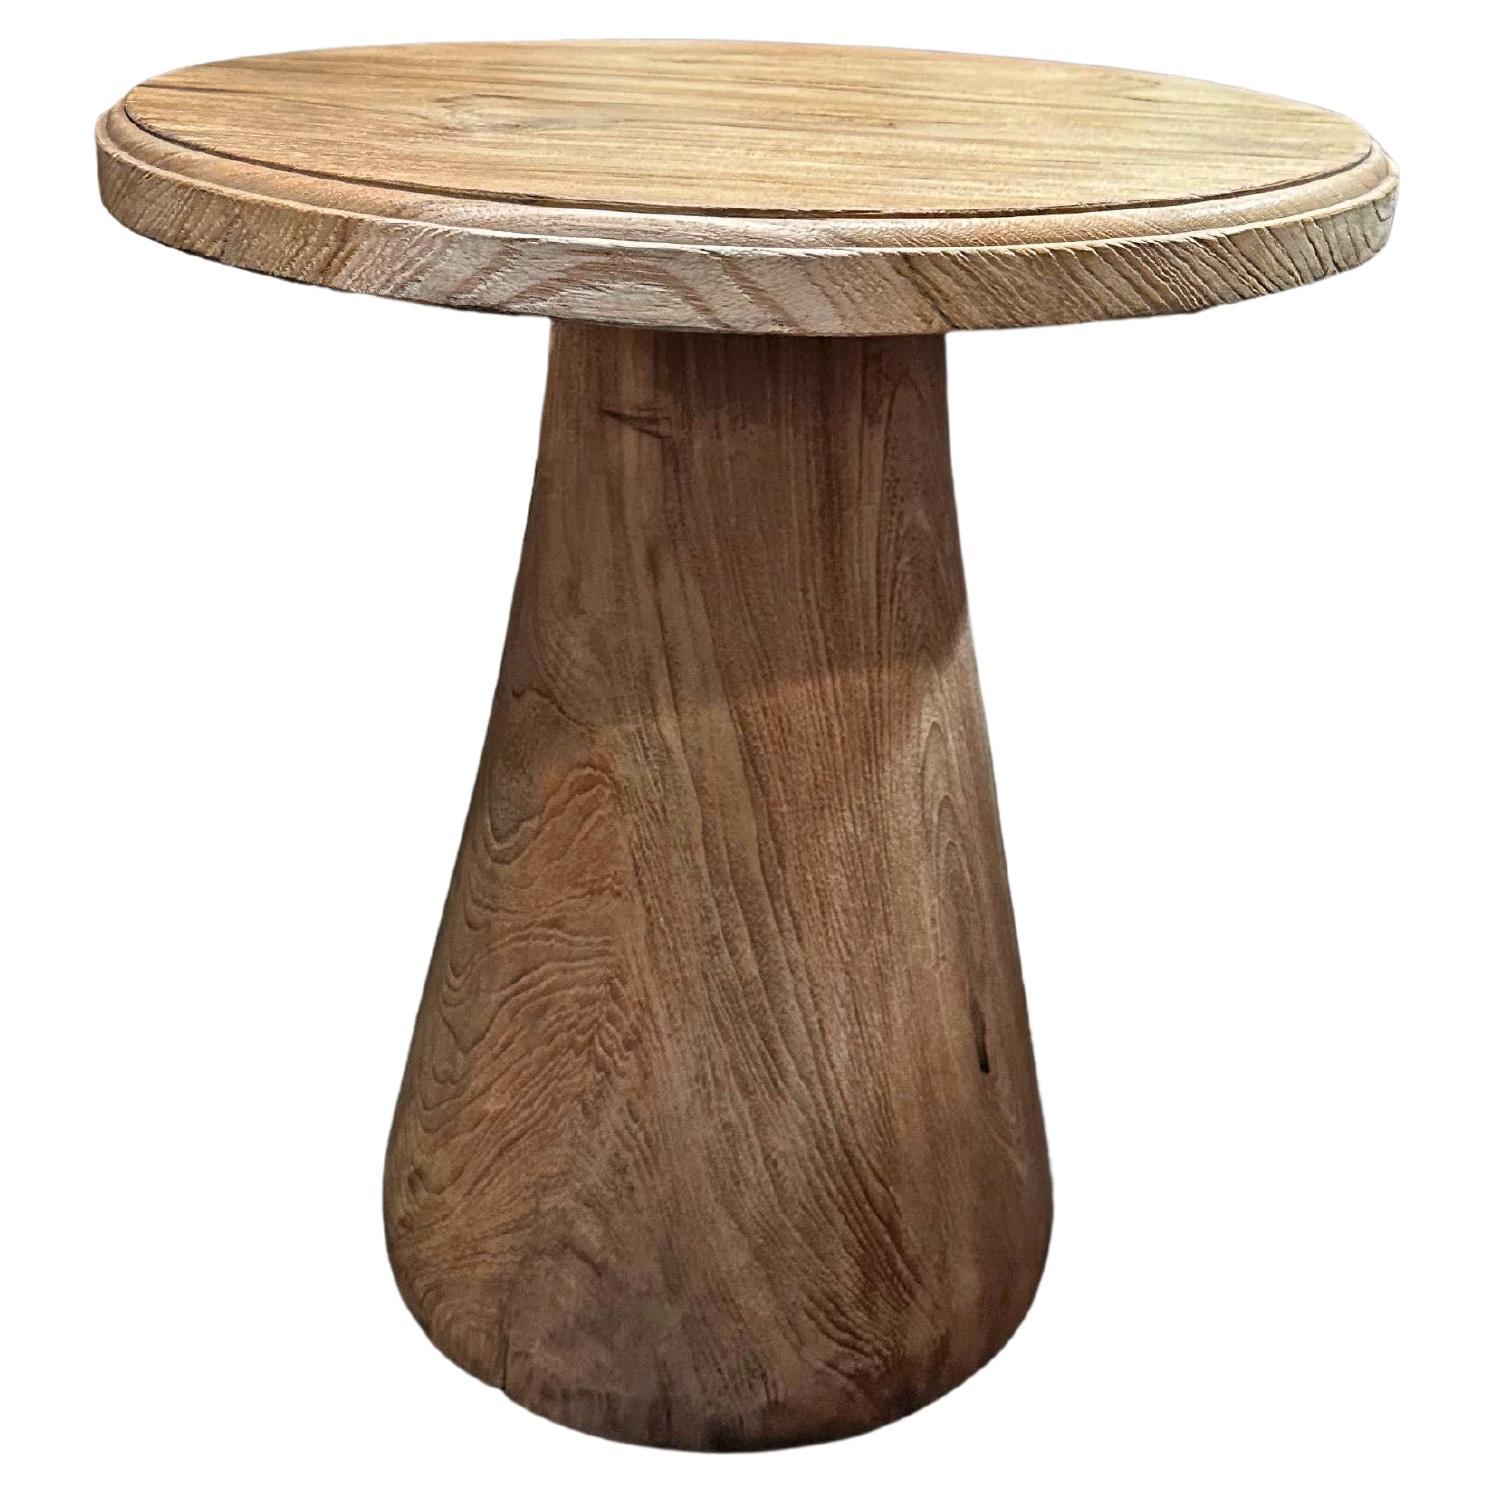 Table ronde sculpturale fabriquée en bois de teck, finition naturelle